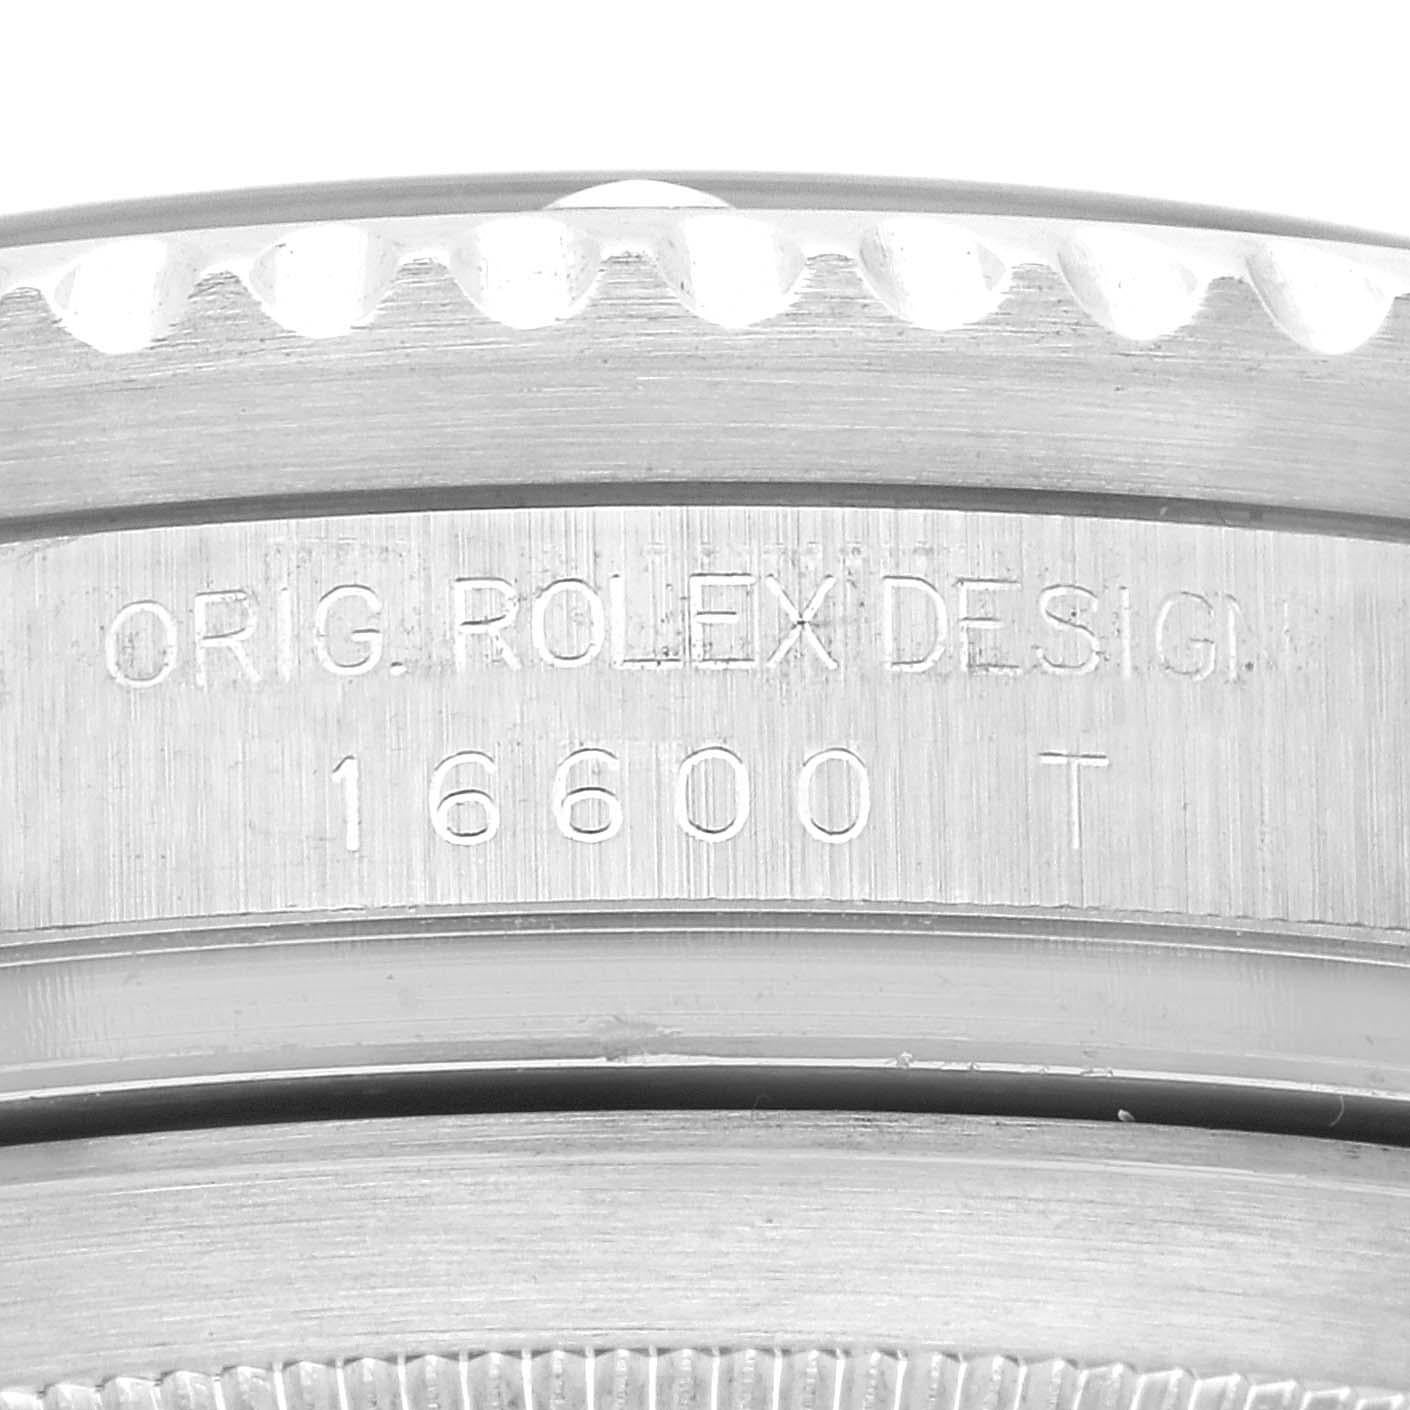 Rolex Seadweller 4000 Black Dial Steel Mens Watch 16600. Mouvement automatique à remontage automatique, officiellement certifié chronomètre. Boîtier en acier inoxydable de 40 mm de diamètre. Logo Rolex sur la couronne. Lunette tournante